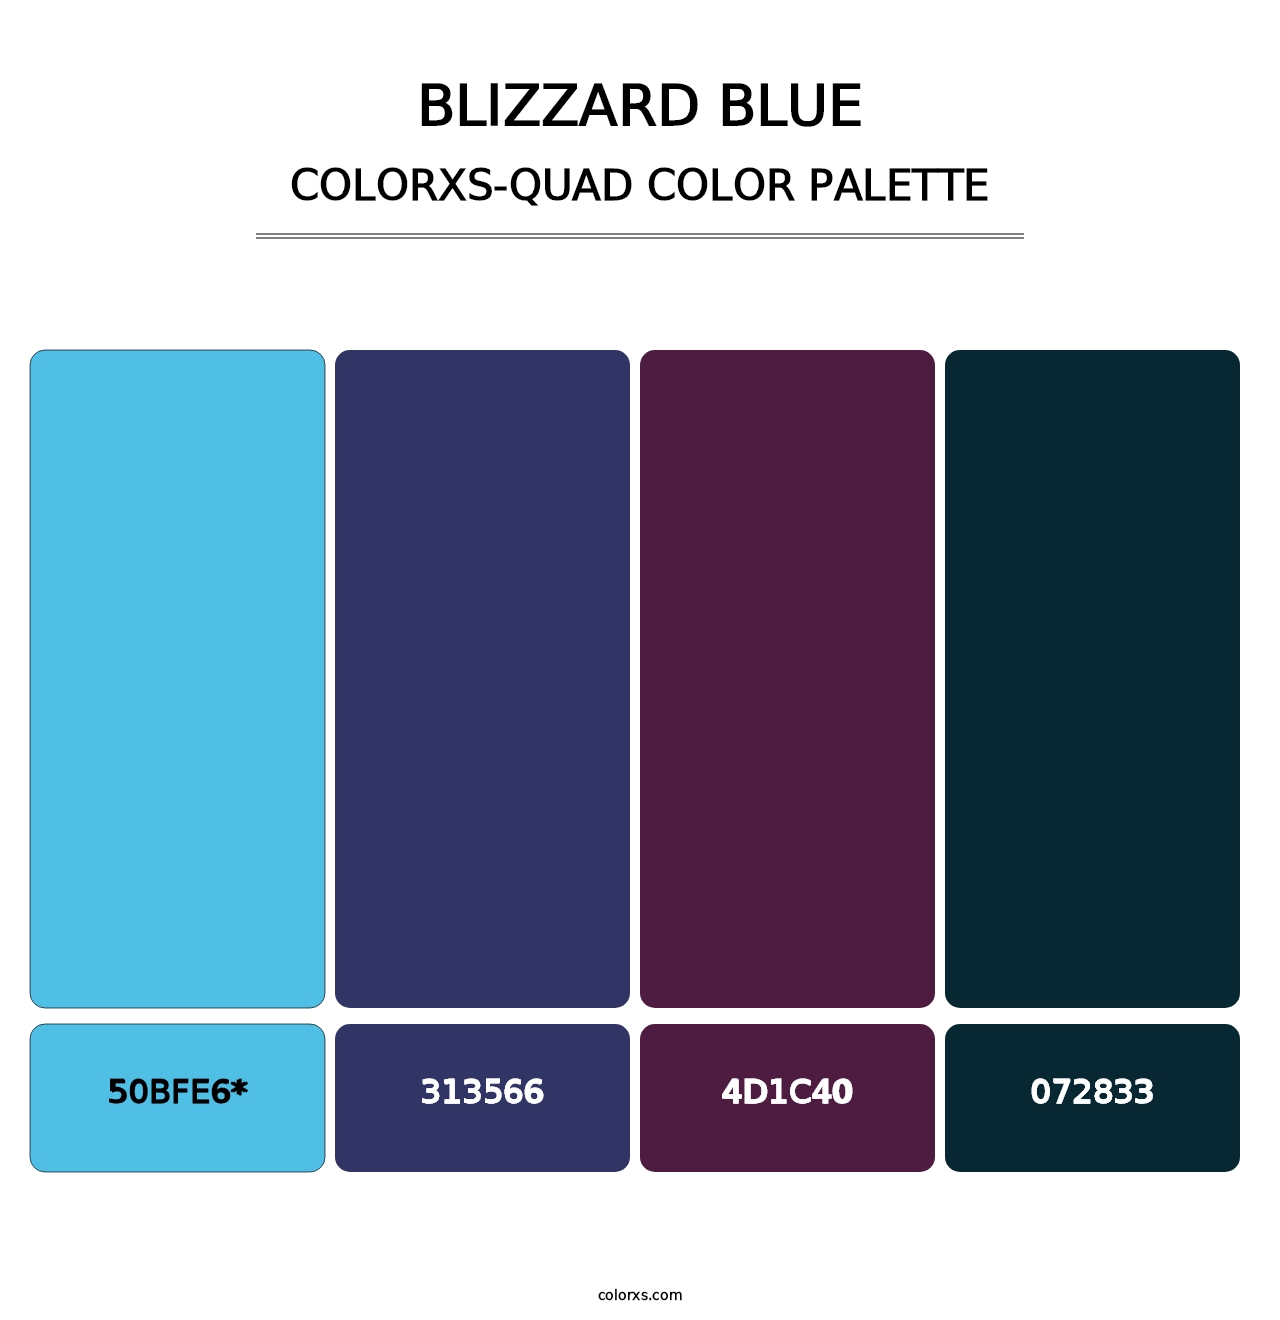 Blizzard Blue - Colorxs Quad Palette